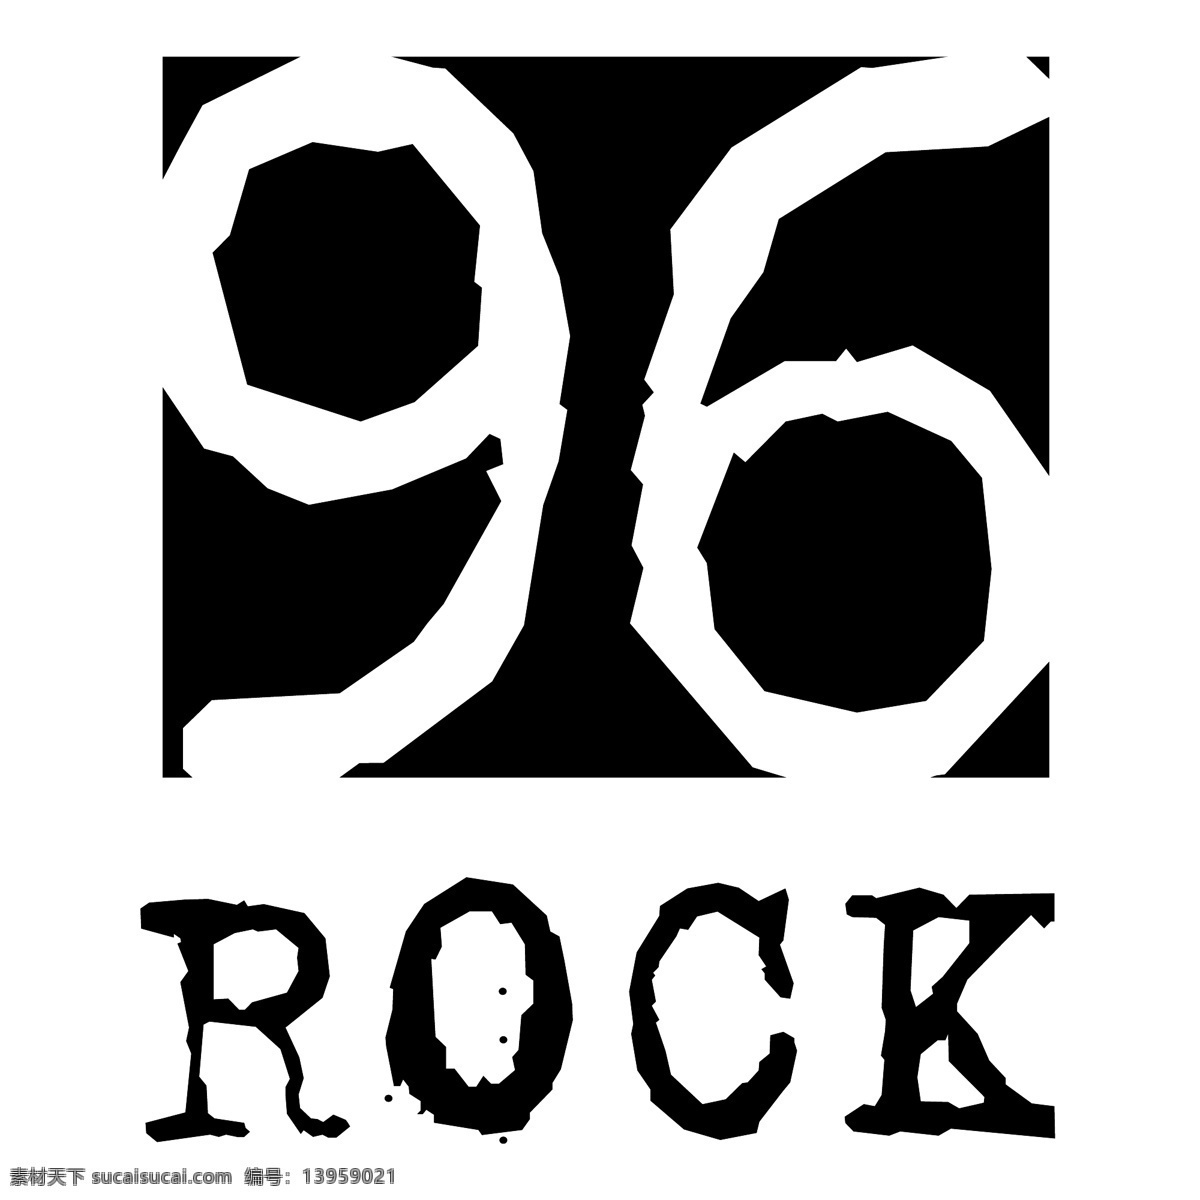 96岩 岩石 矢量 免费 载体 摇滚 明星 摇滚的载体 摇滚乐队 矢量ai 吉他 摇滚标志矢量 纹理 向量 攀岩者 艺术 自由载体摇滚